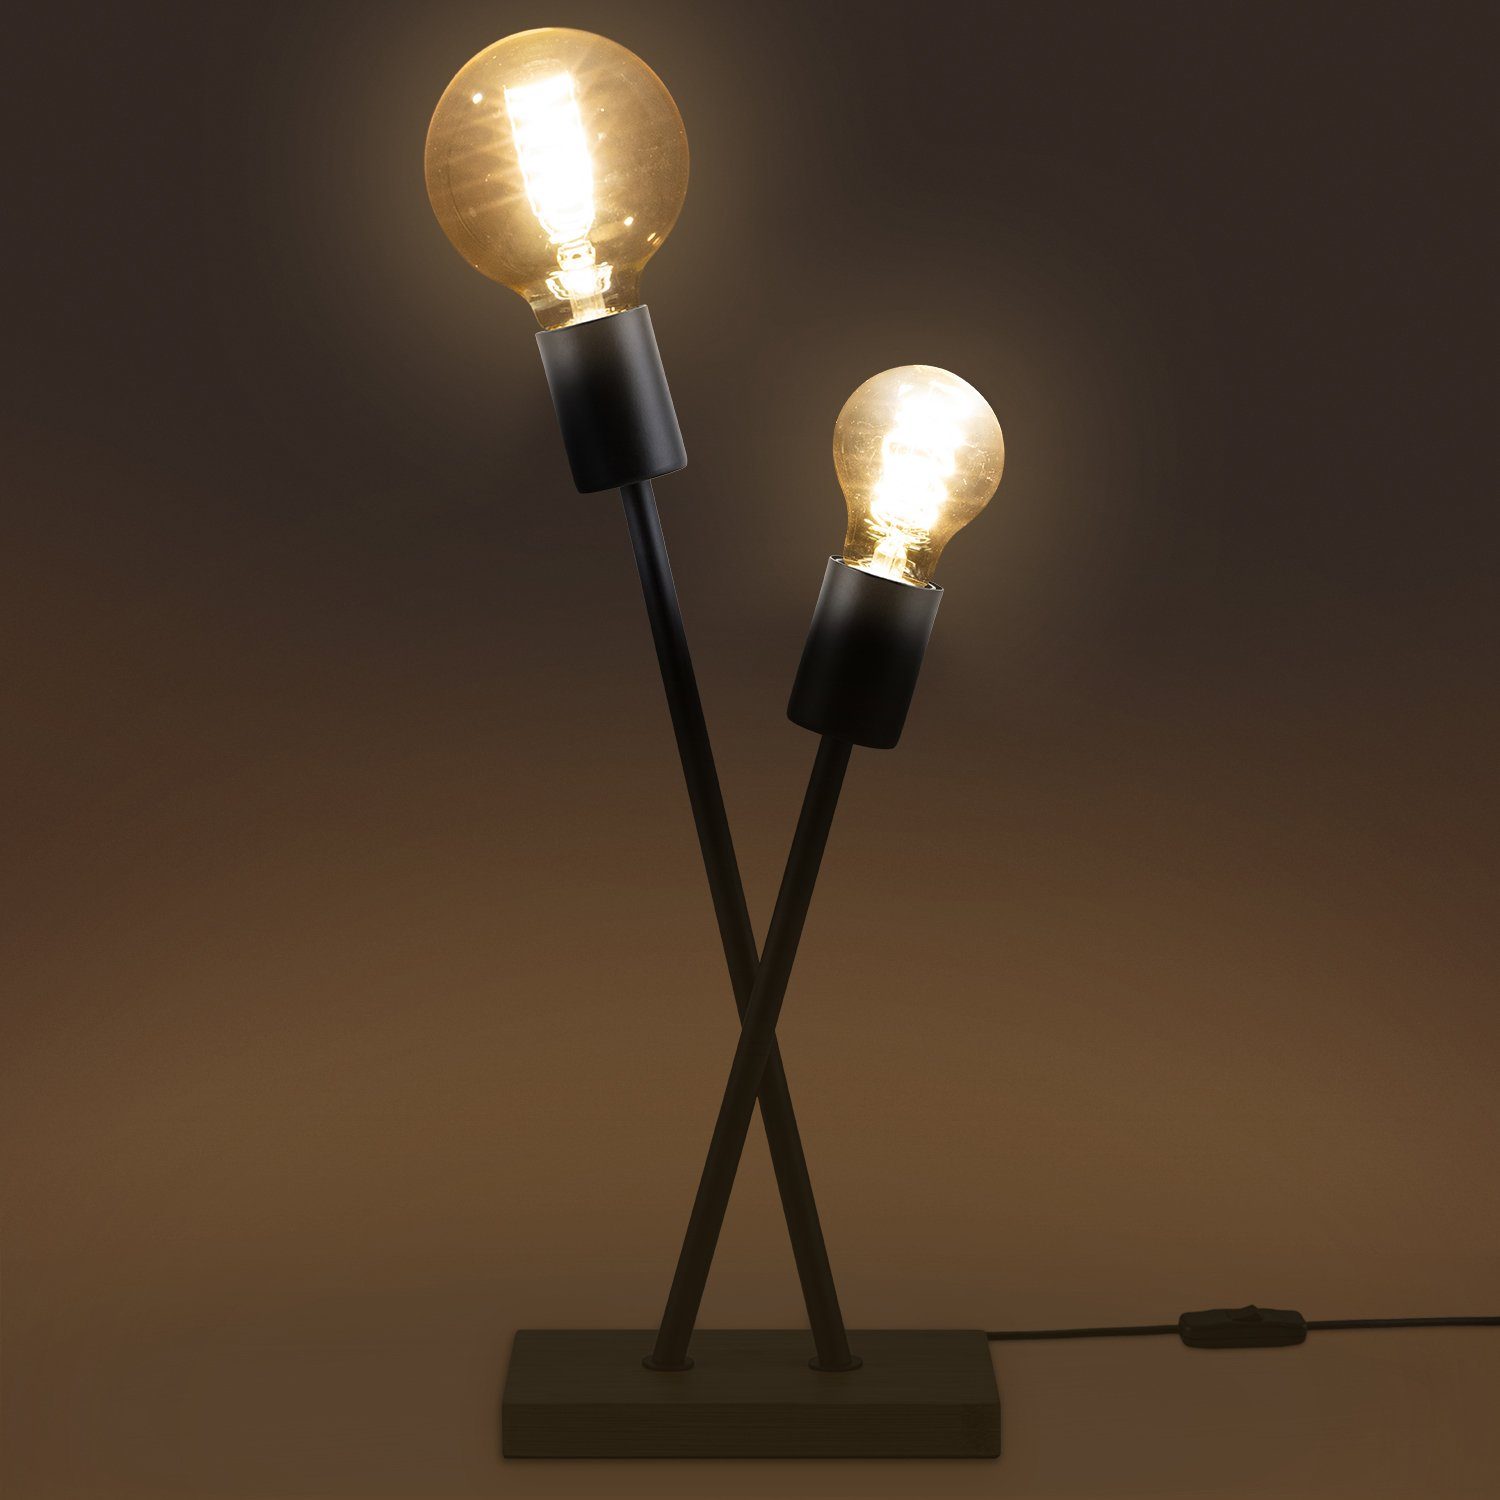 Stehlampe Vintage Design Wohnzimmer Lampe E27 LED Home Retro Leuchtmittel, IKS, Tischleuchte Industrial Paco ohne